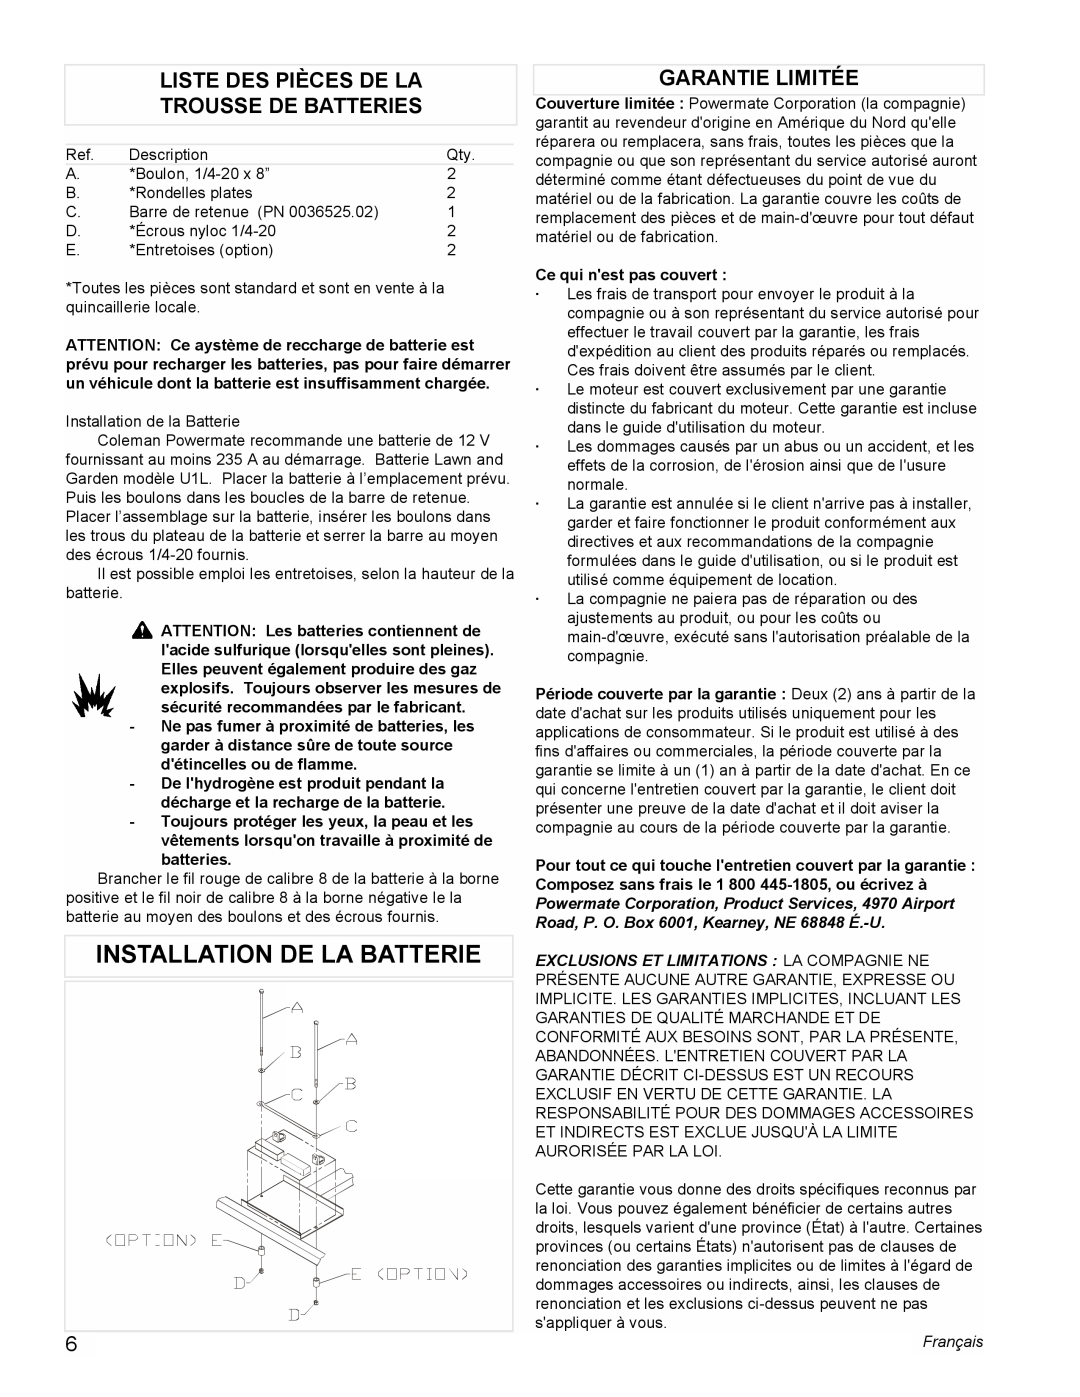 Powermate PM0545001 Installation De La Batterie, Liste Des Pièces De La Trousse De Batteries, Garantie Limitée, Français 